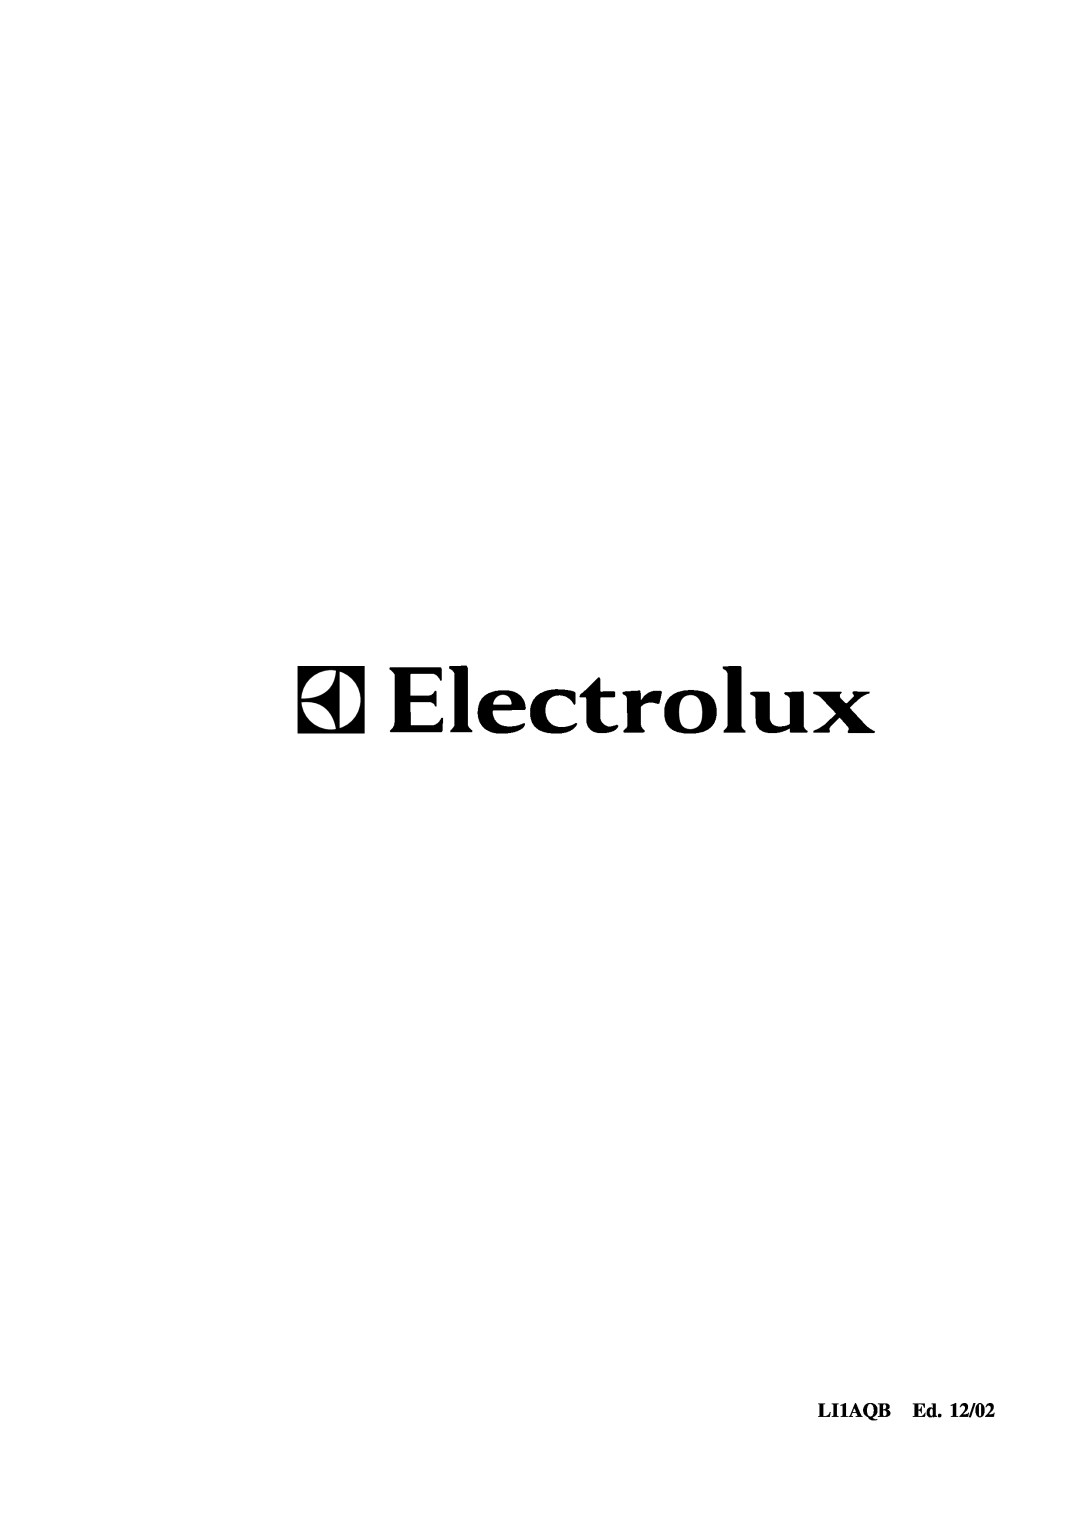 Electrolux EFC6410, EFC950, EFC9405, EFC9410, EFC650, EFC6405, CH1900, CH1600, CH1200 user manual LI1AQB Ed. 12/02 